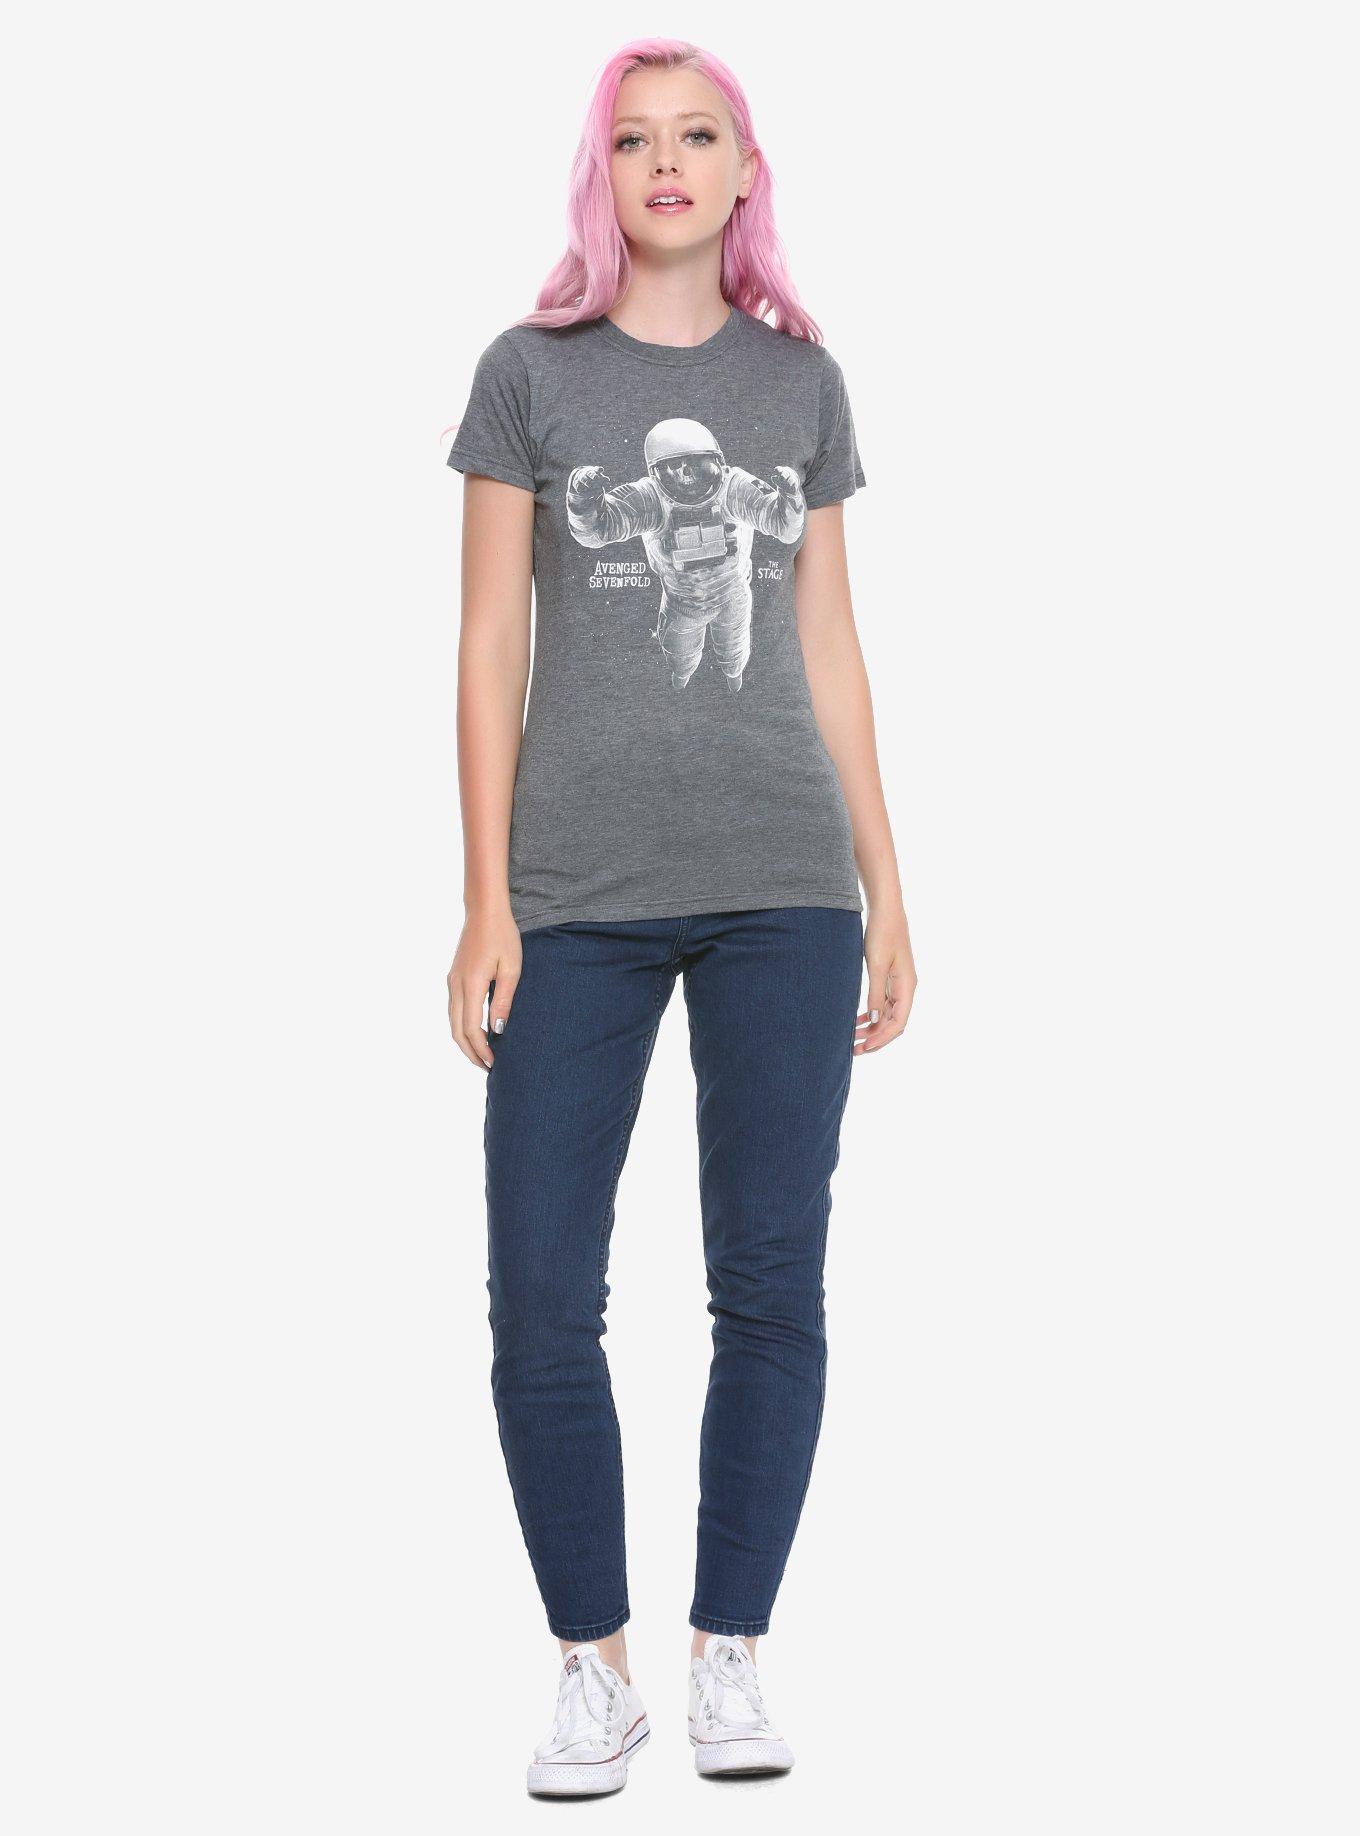 Avenged Sevenfold Skeleton Astronaut Girls T-Shirt, , alternate